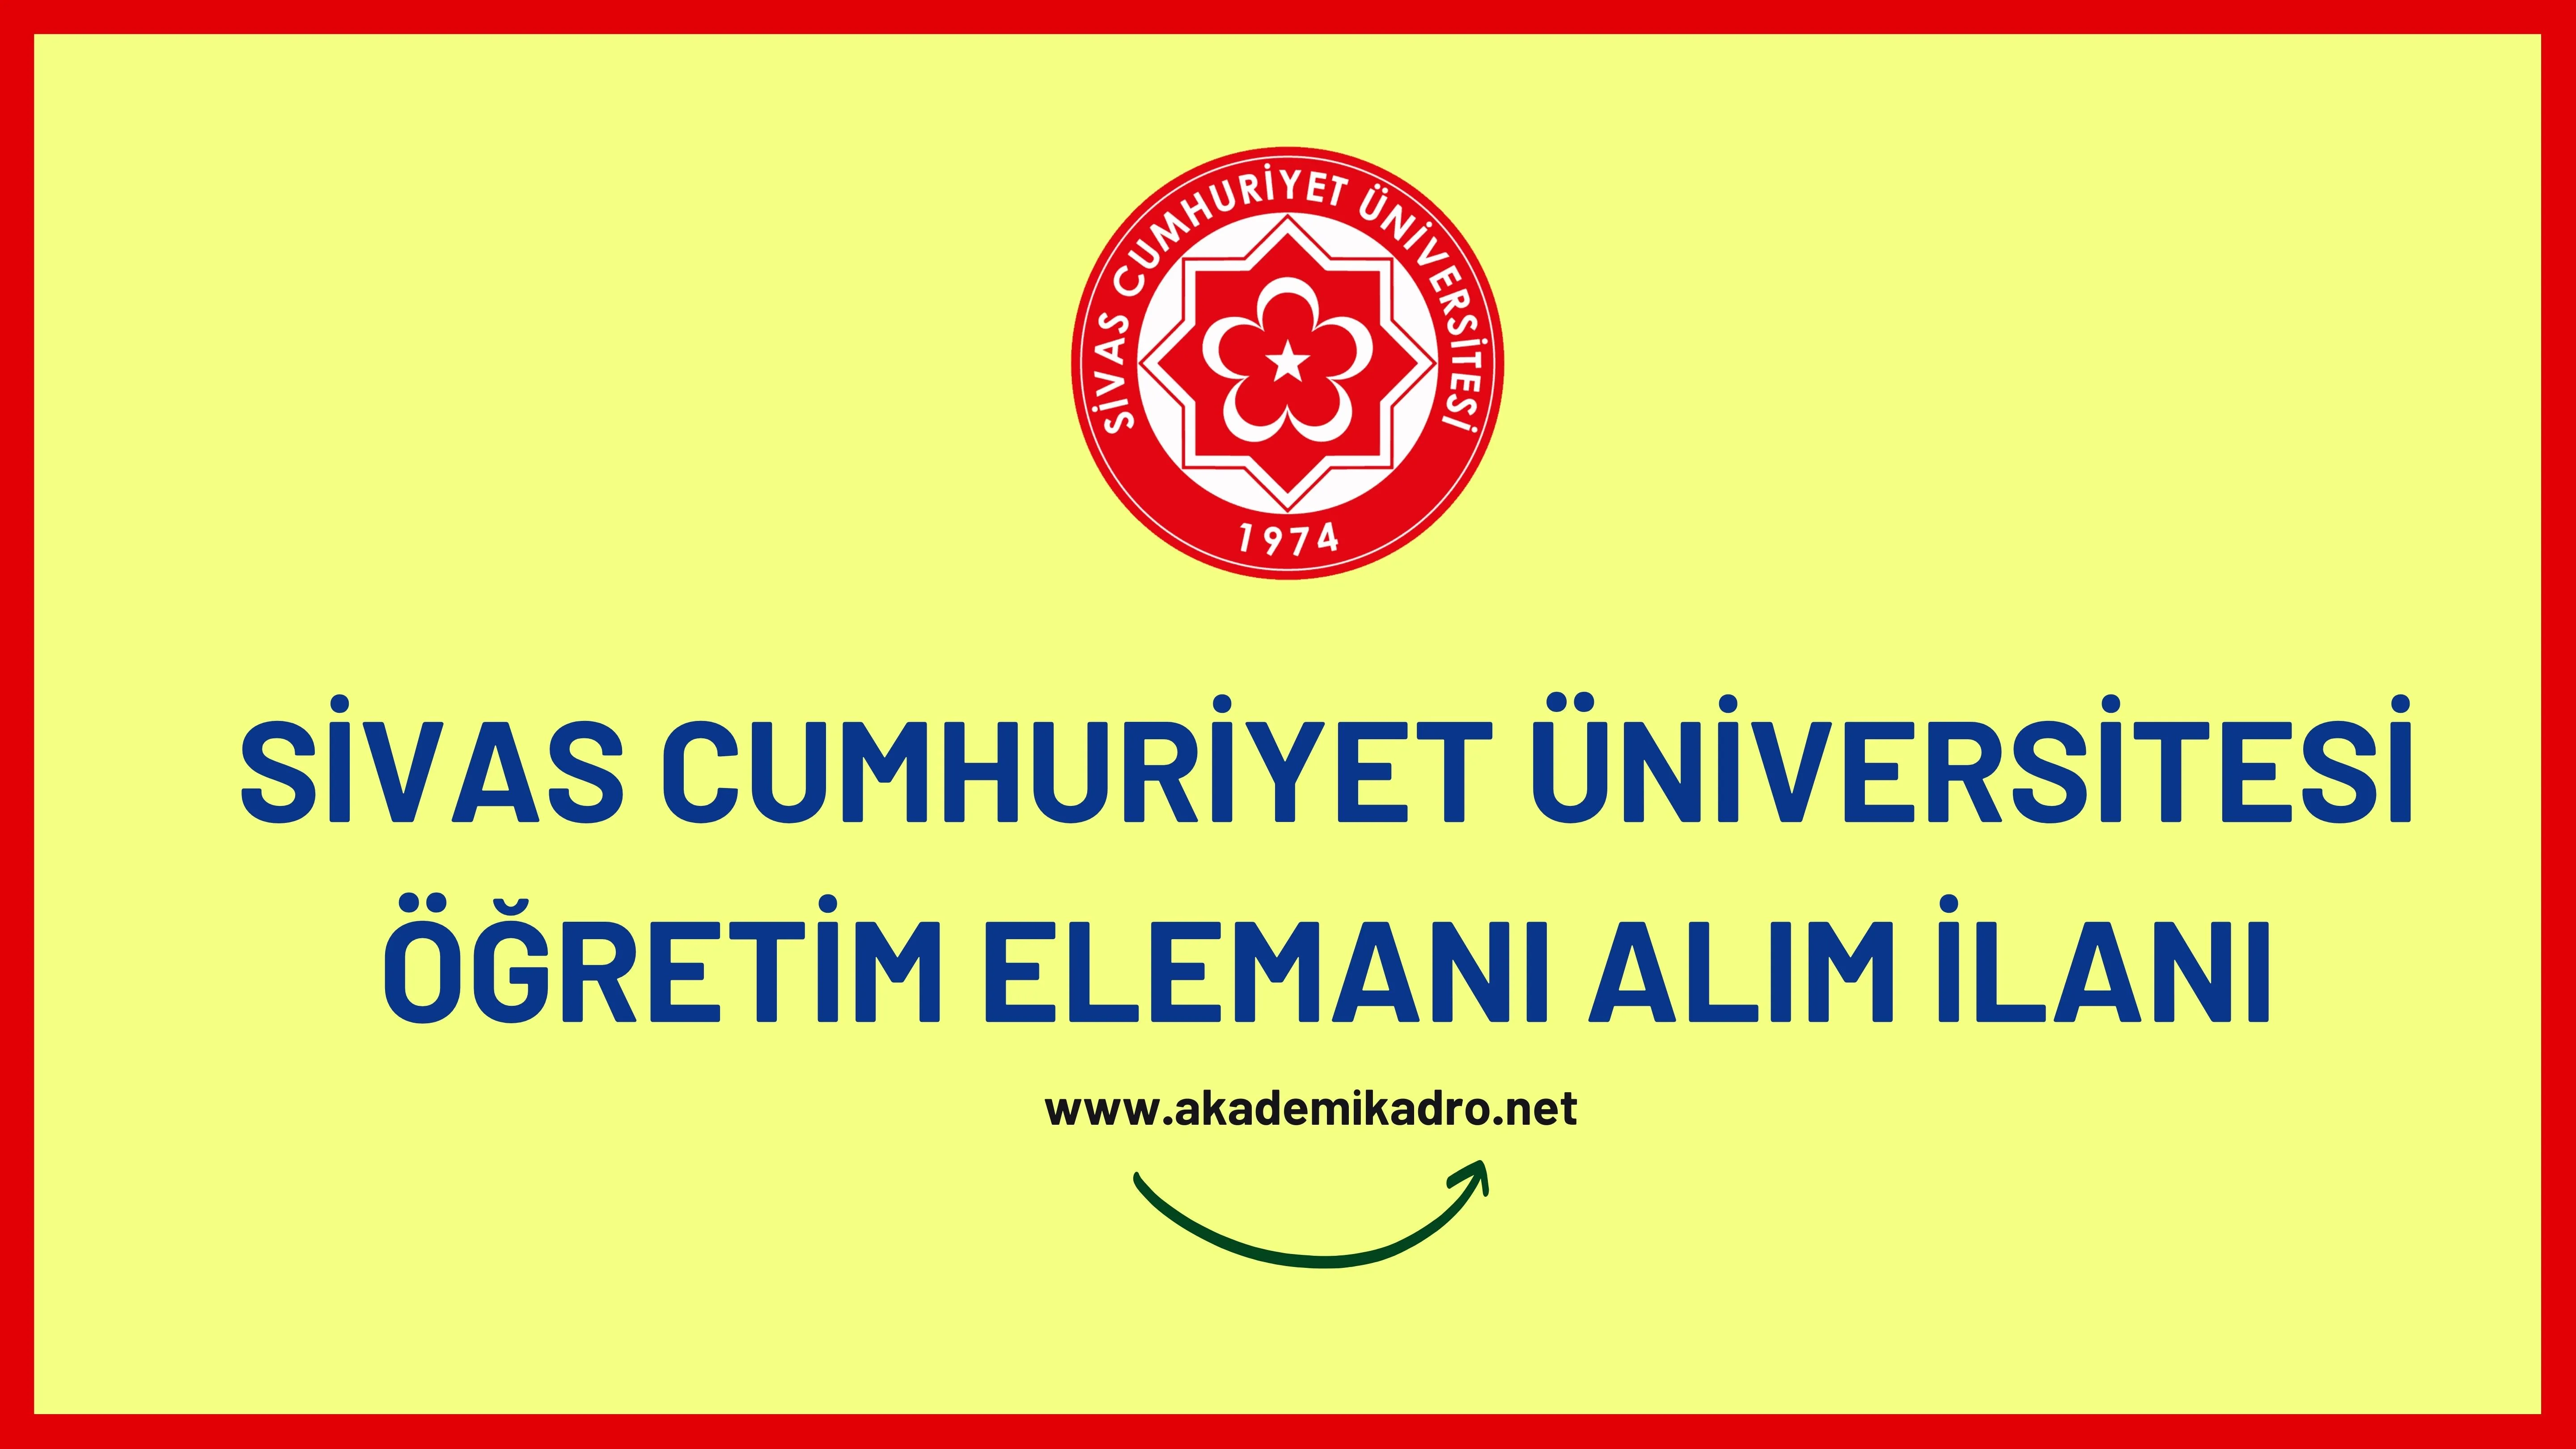 Sivas Cumhuriyet Üniversitesi 8 Araştırma görevlisi ve 10 Öğretim görevlisi olmak üzere 18 öğretim elemanı alacak.